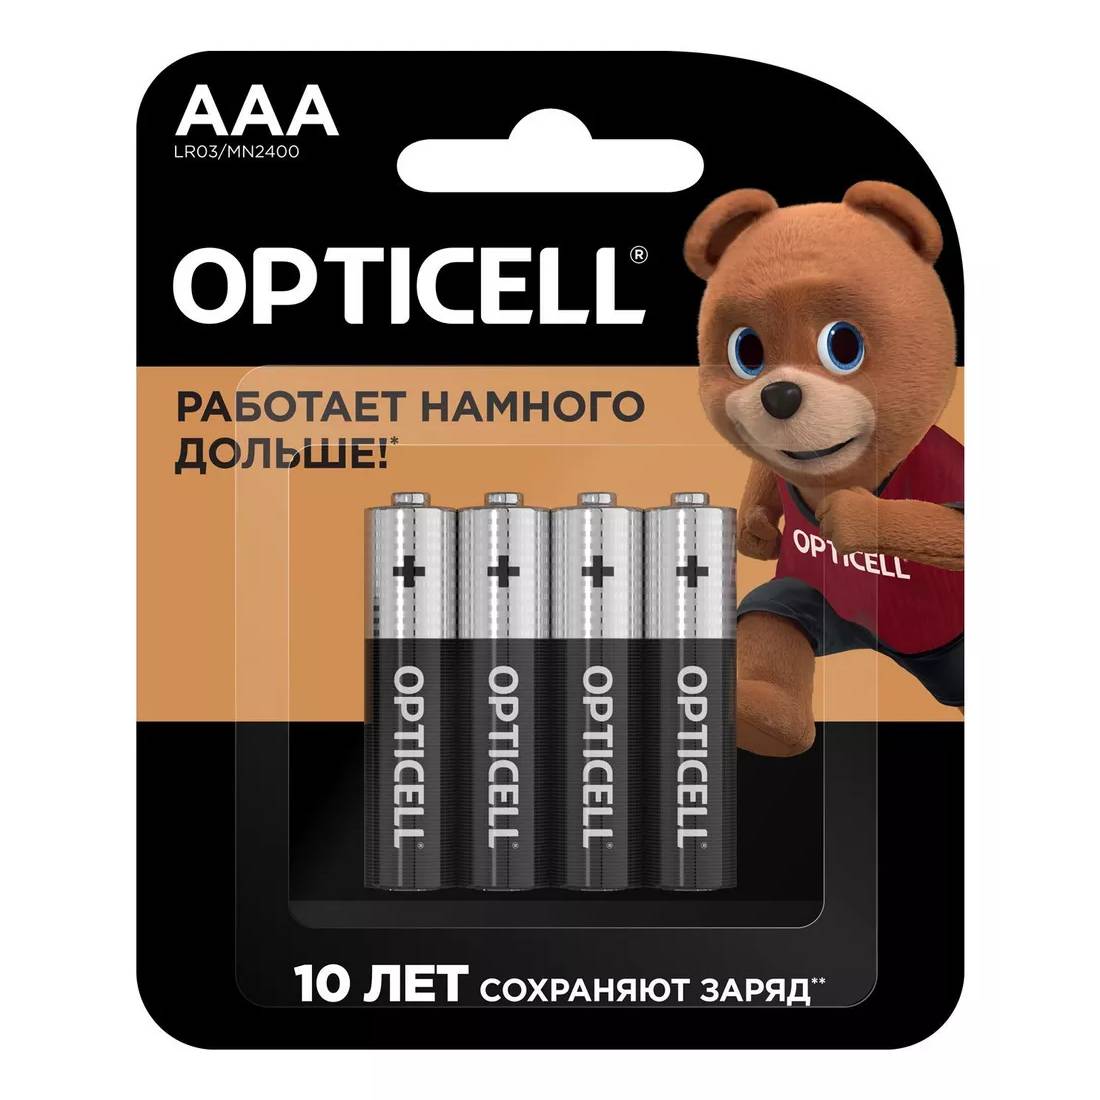 Батарейки Opticell AAA 4 шт, цвет черный, размер AAA